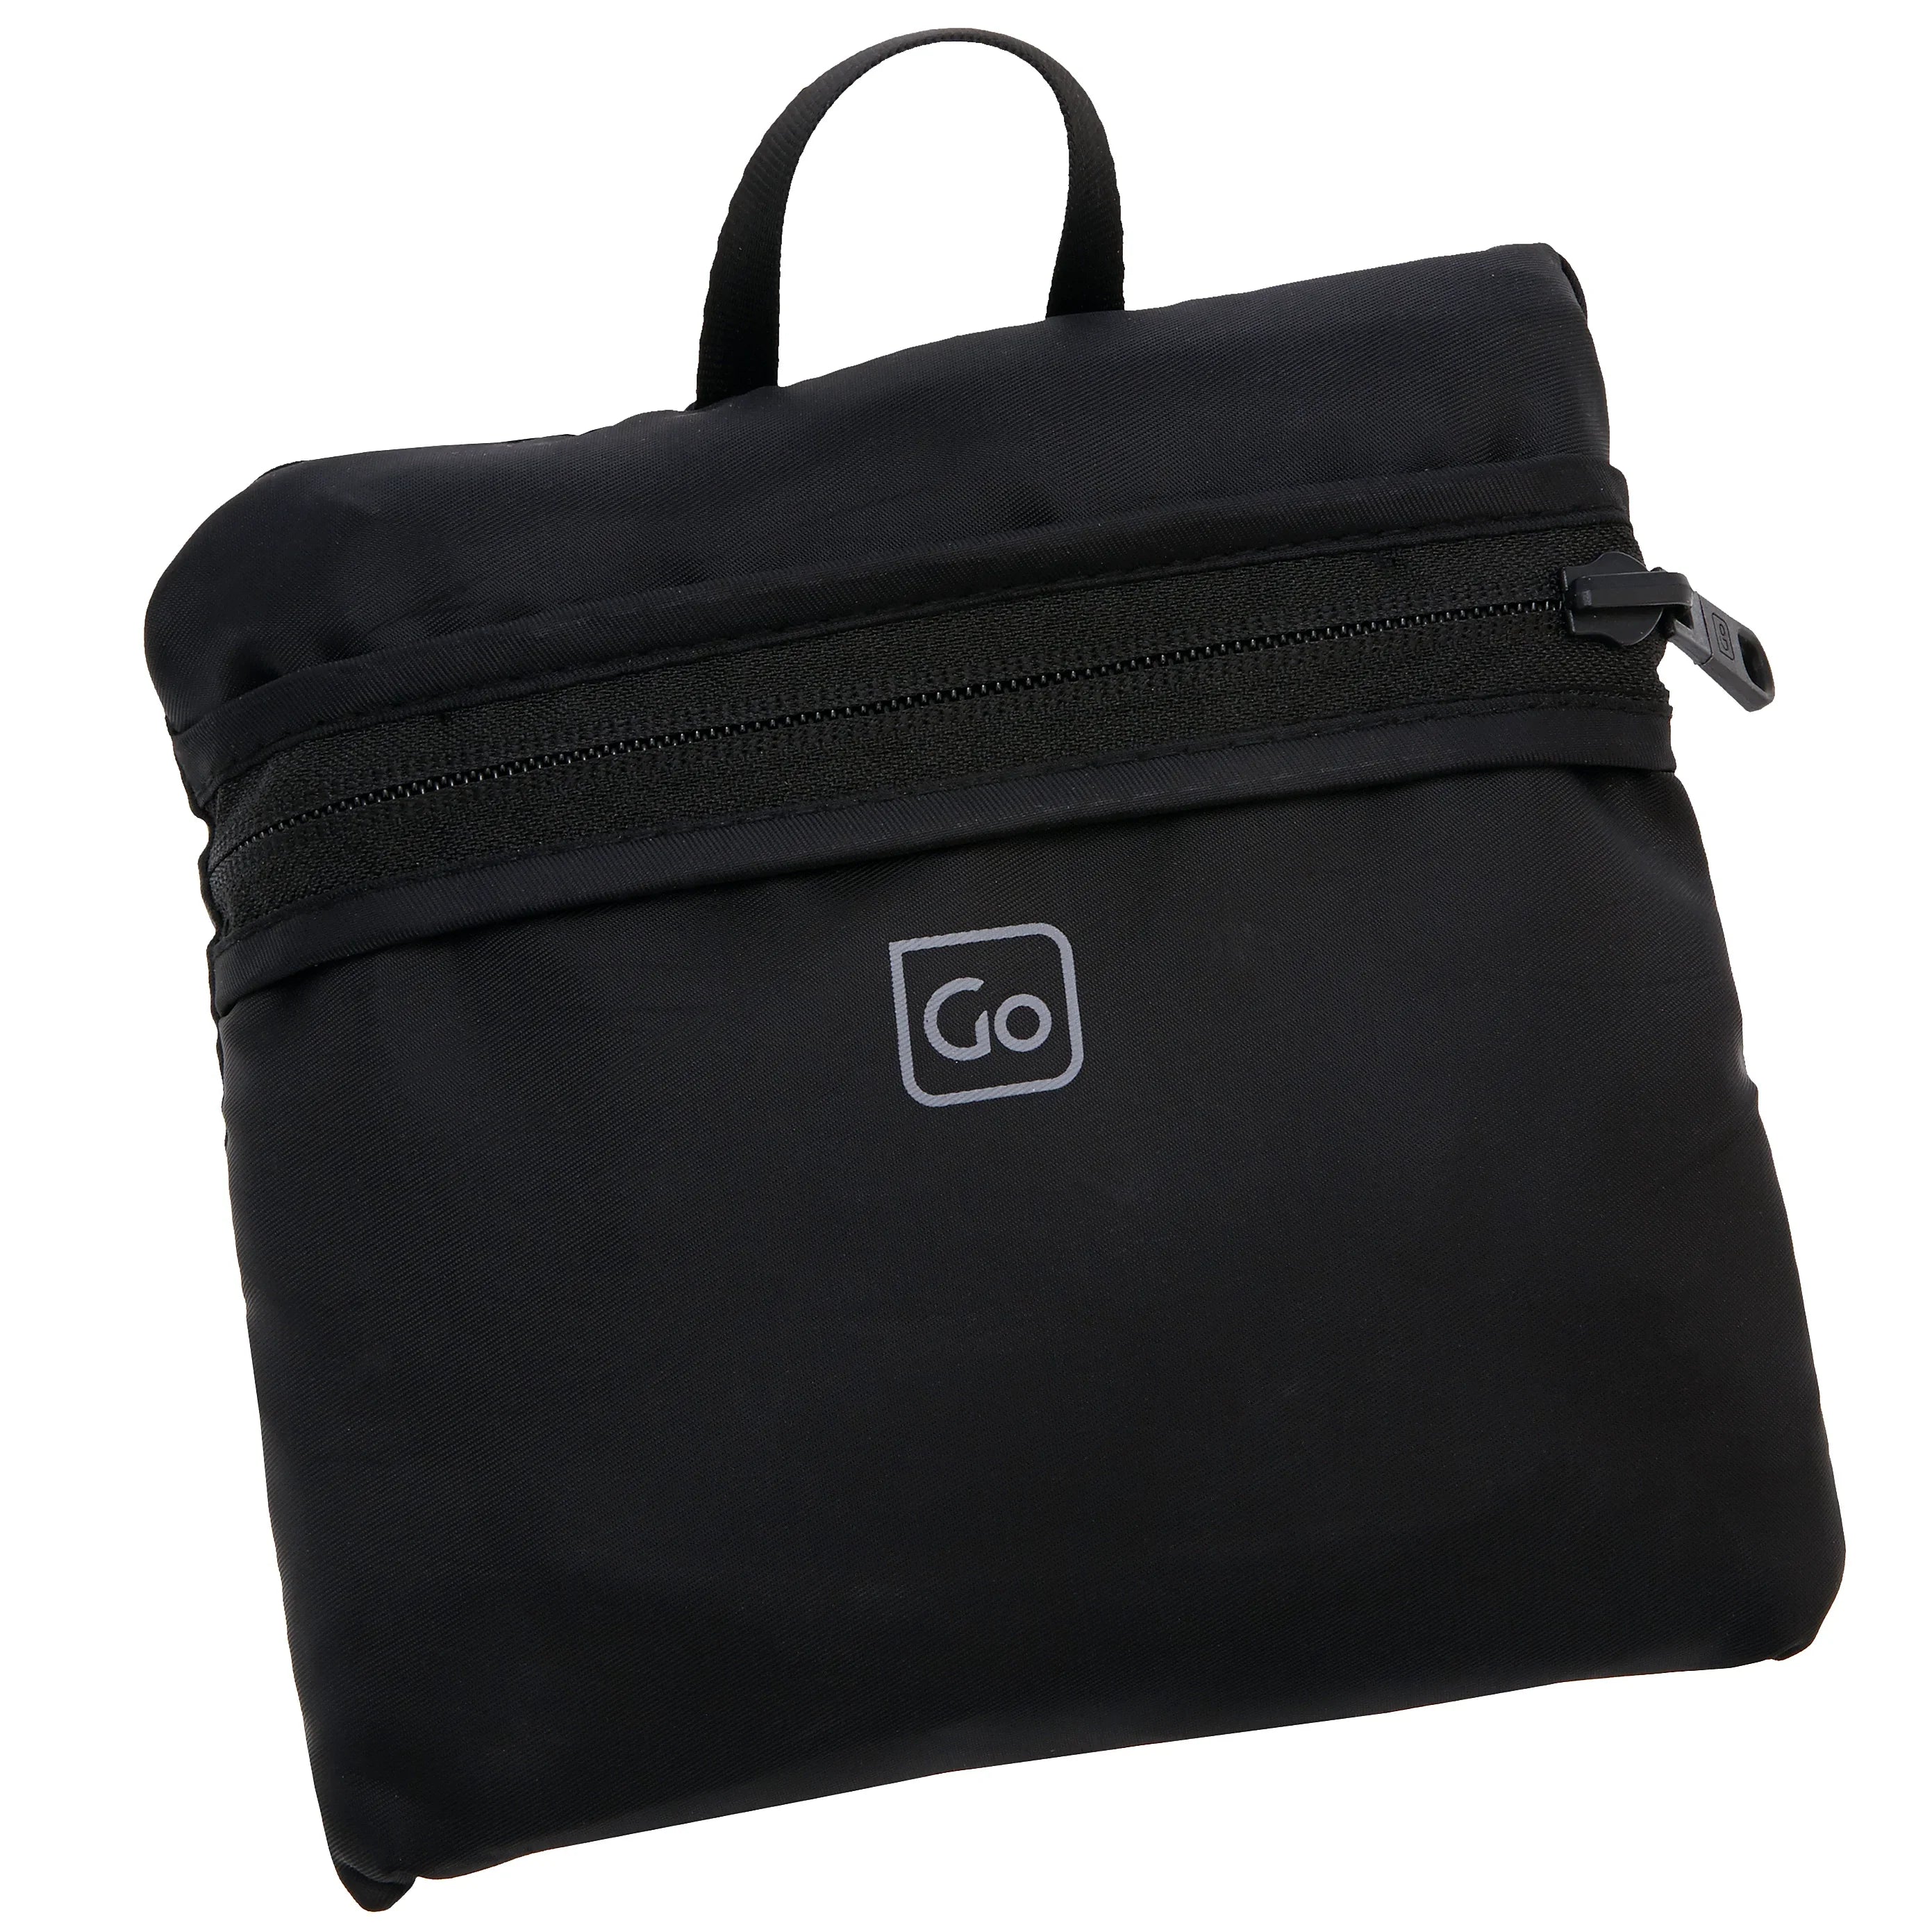 Accessoires de voyage Design Go sac de voyage pliable Travel Bag 50 cm - rouge